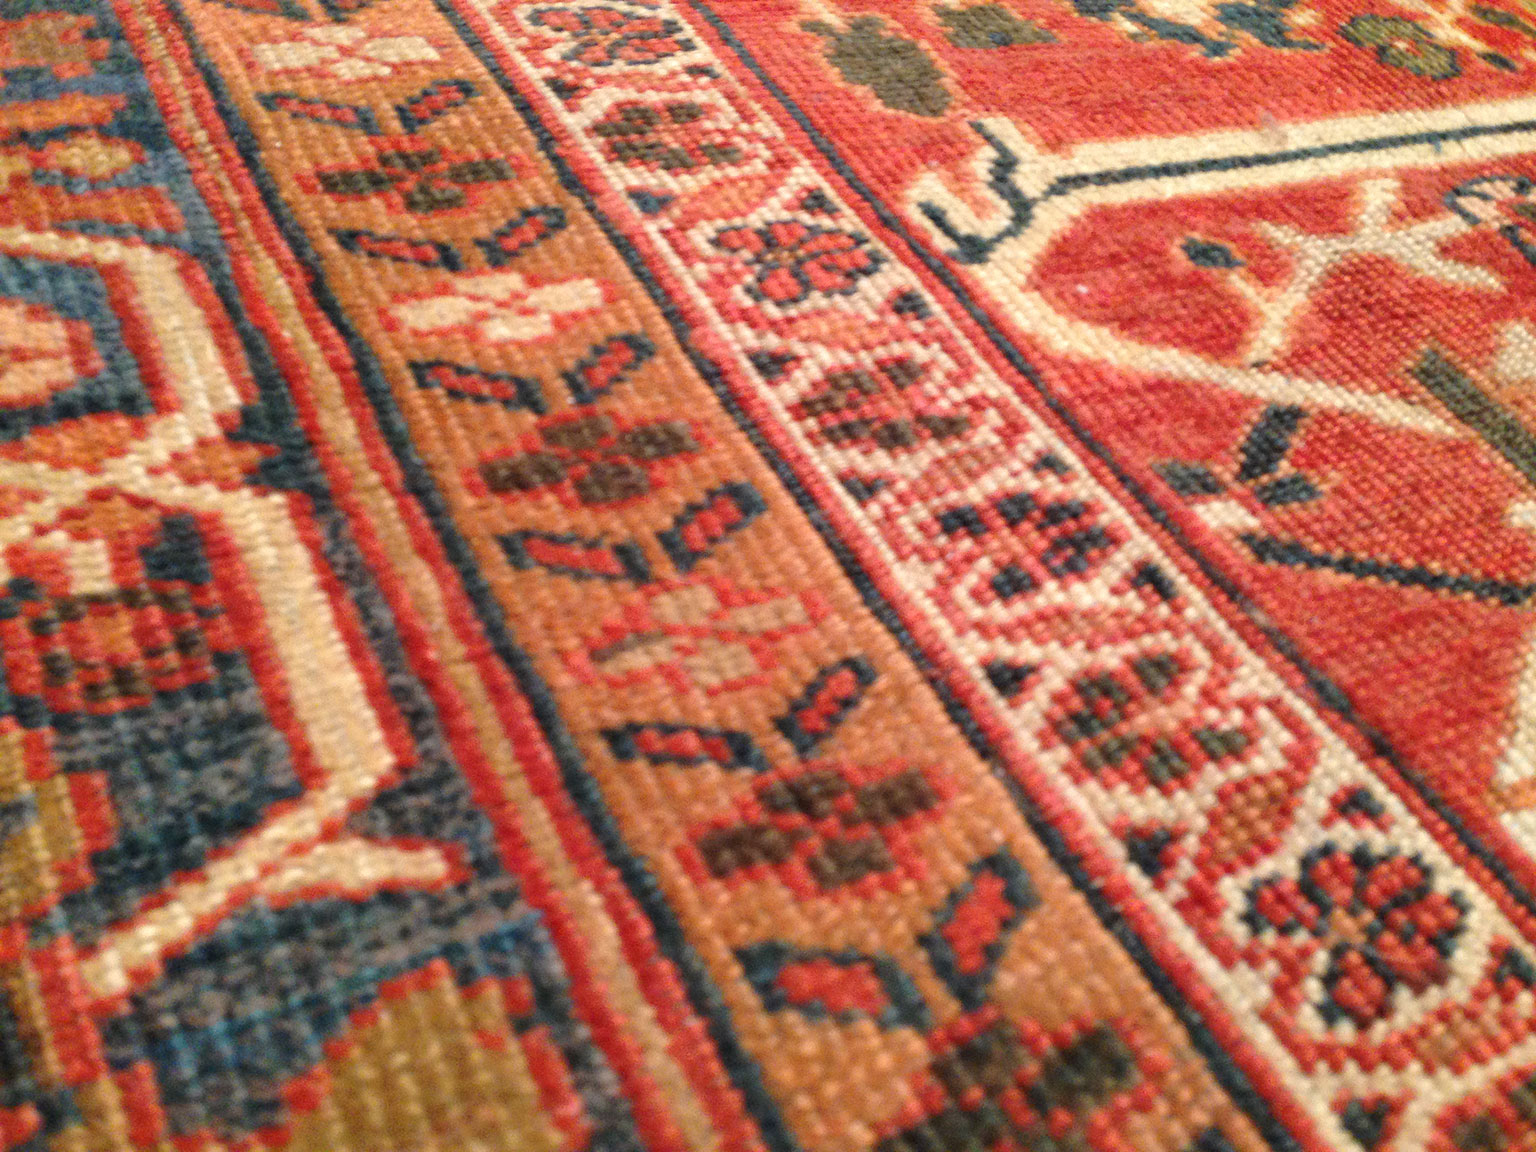 Antique sultan abad Carpet - # 91750